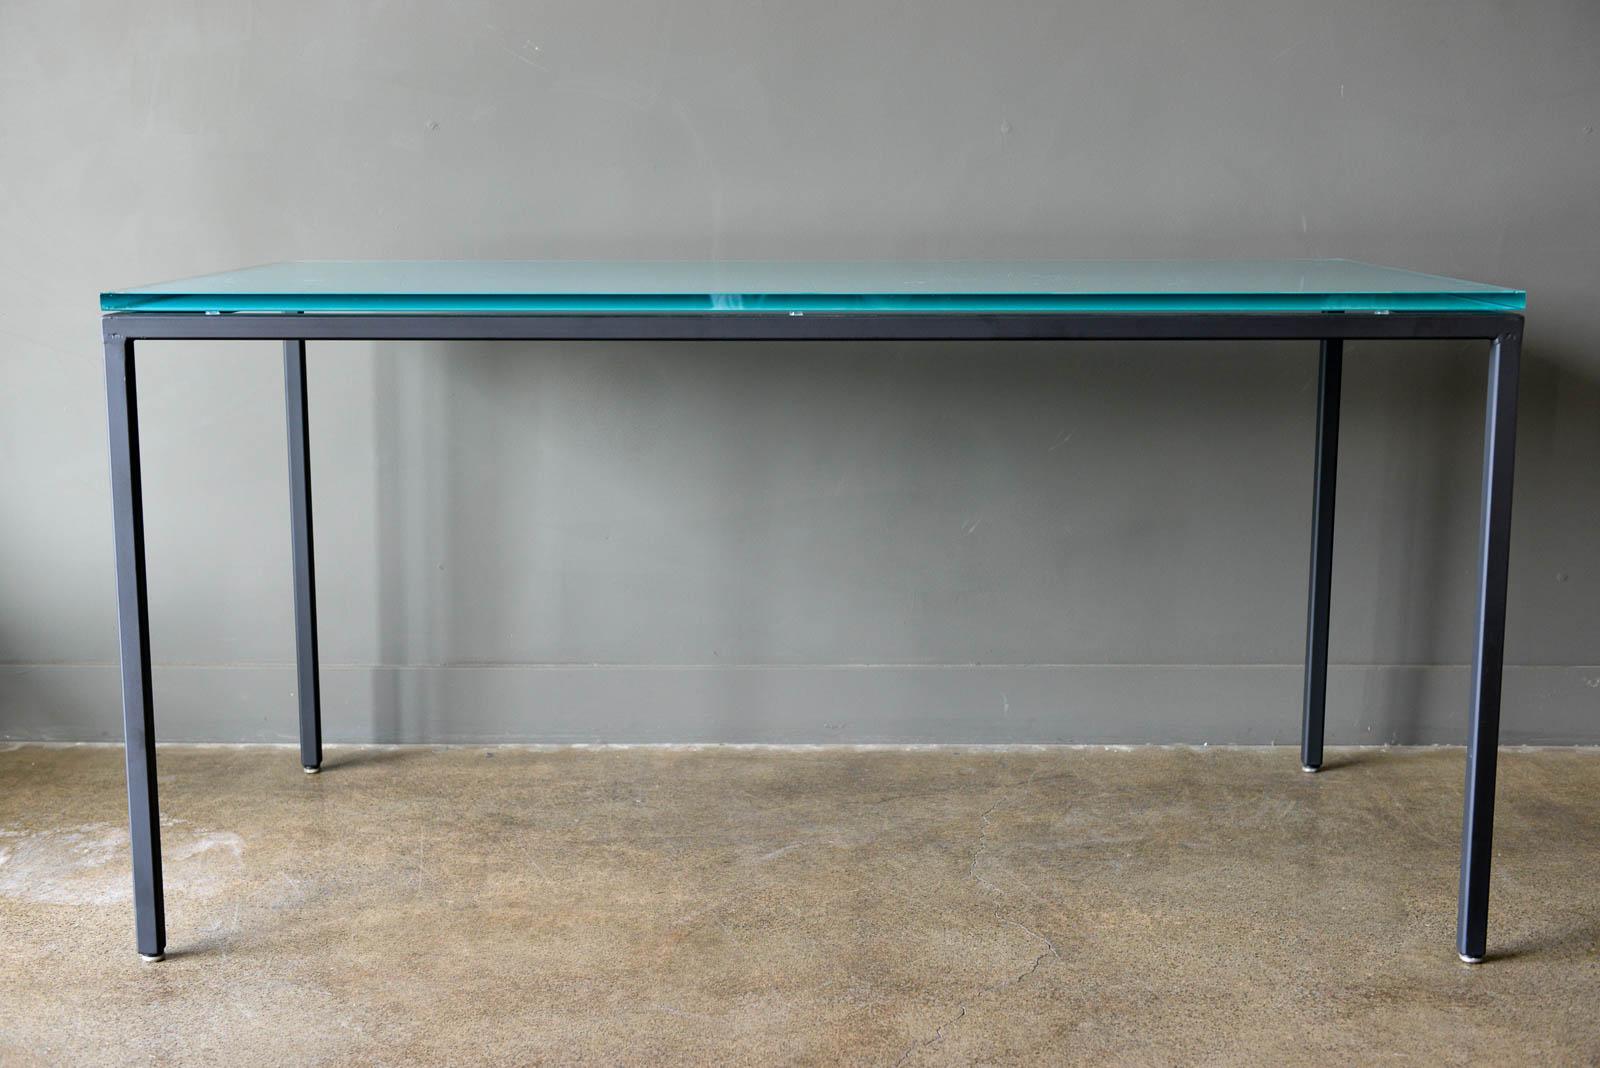 Eisentisch mit opakem Originalglas von Darrell Landrum für Avard NYC, 1950. Der Tisch wurde professionell restauriert, mit neuer mattschwarzer Pulverbeschichtung und originalem Milchglas in sehr gutem Zustand. Original Kuppeln der Stille